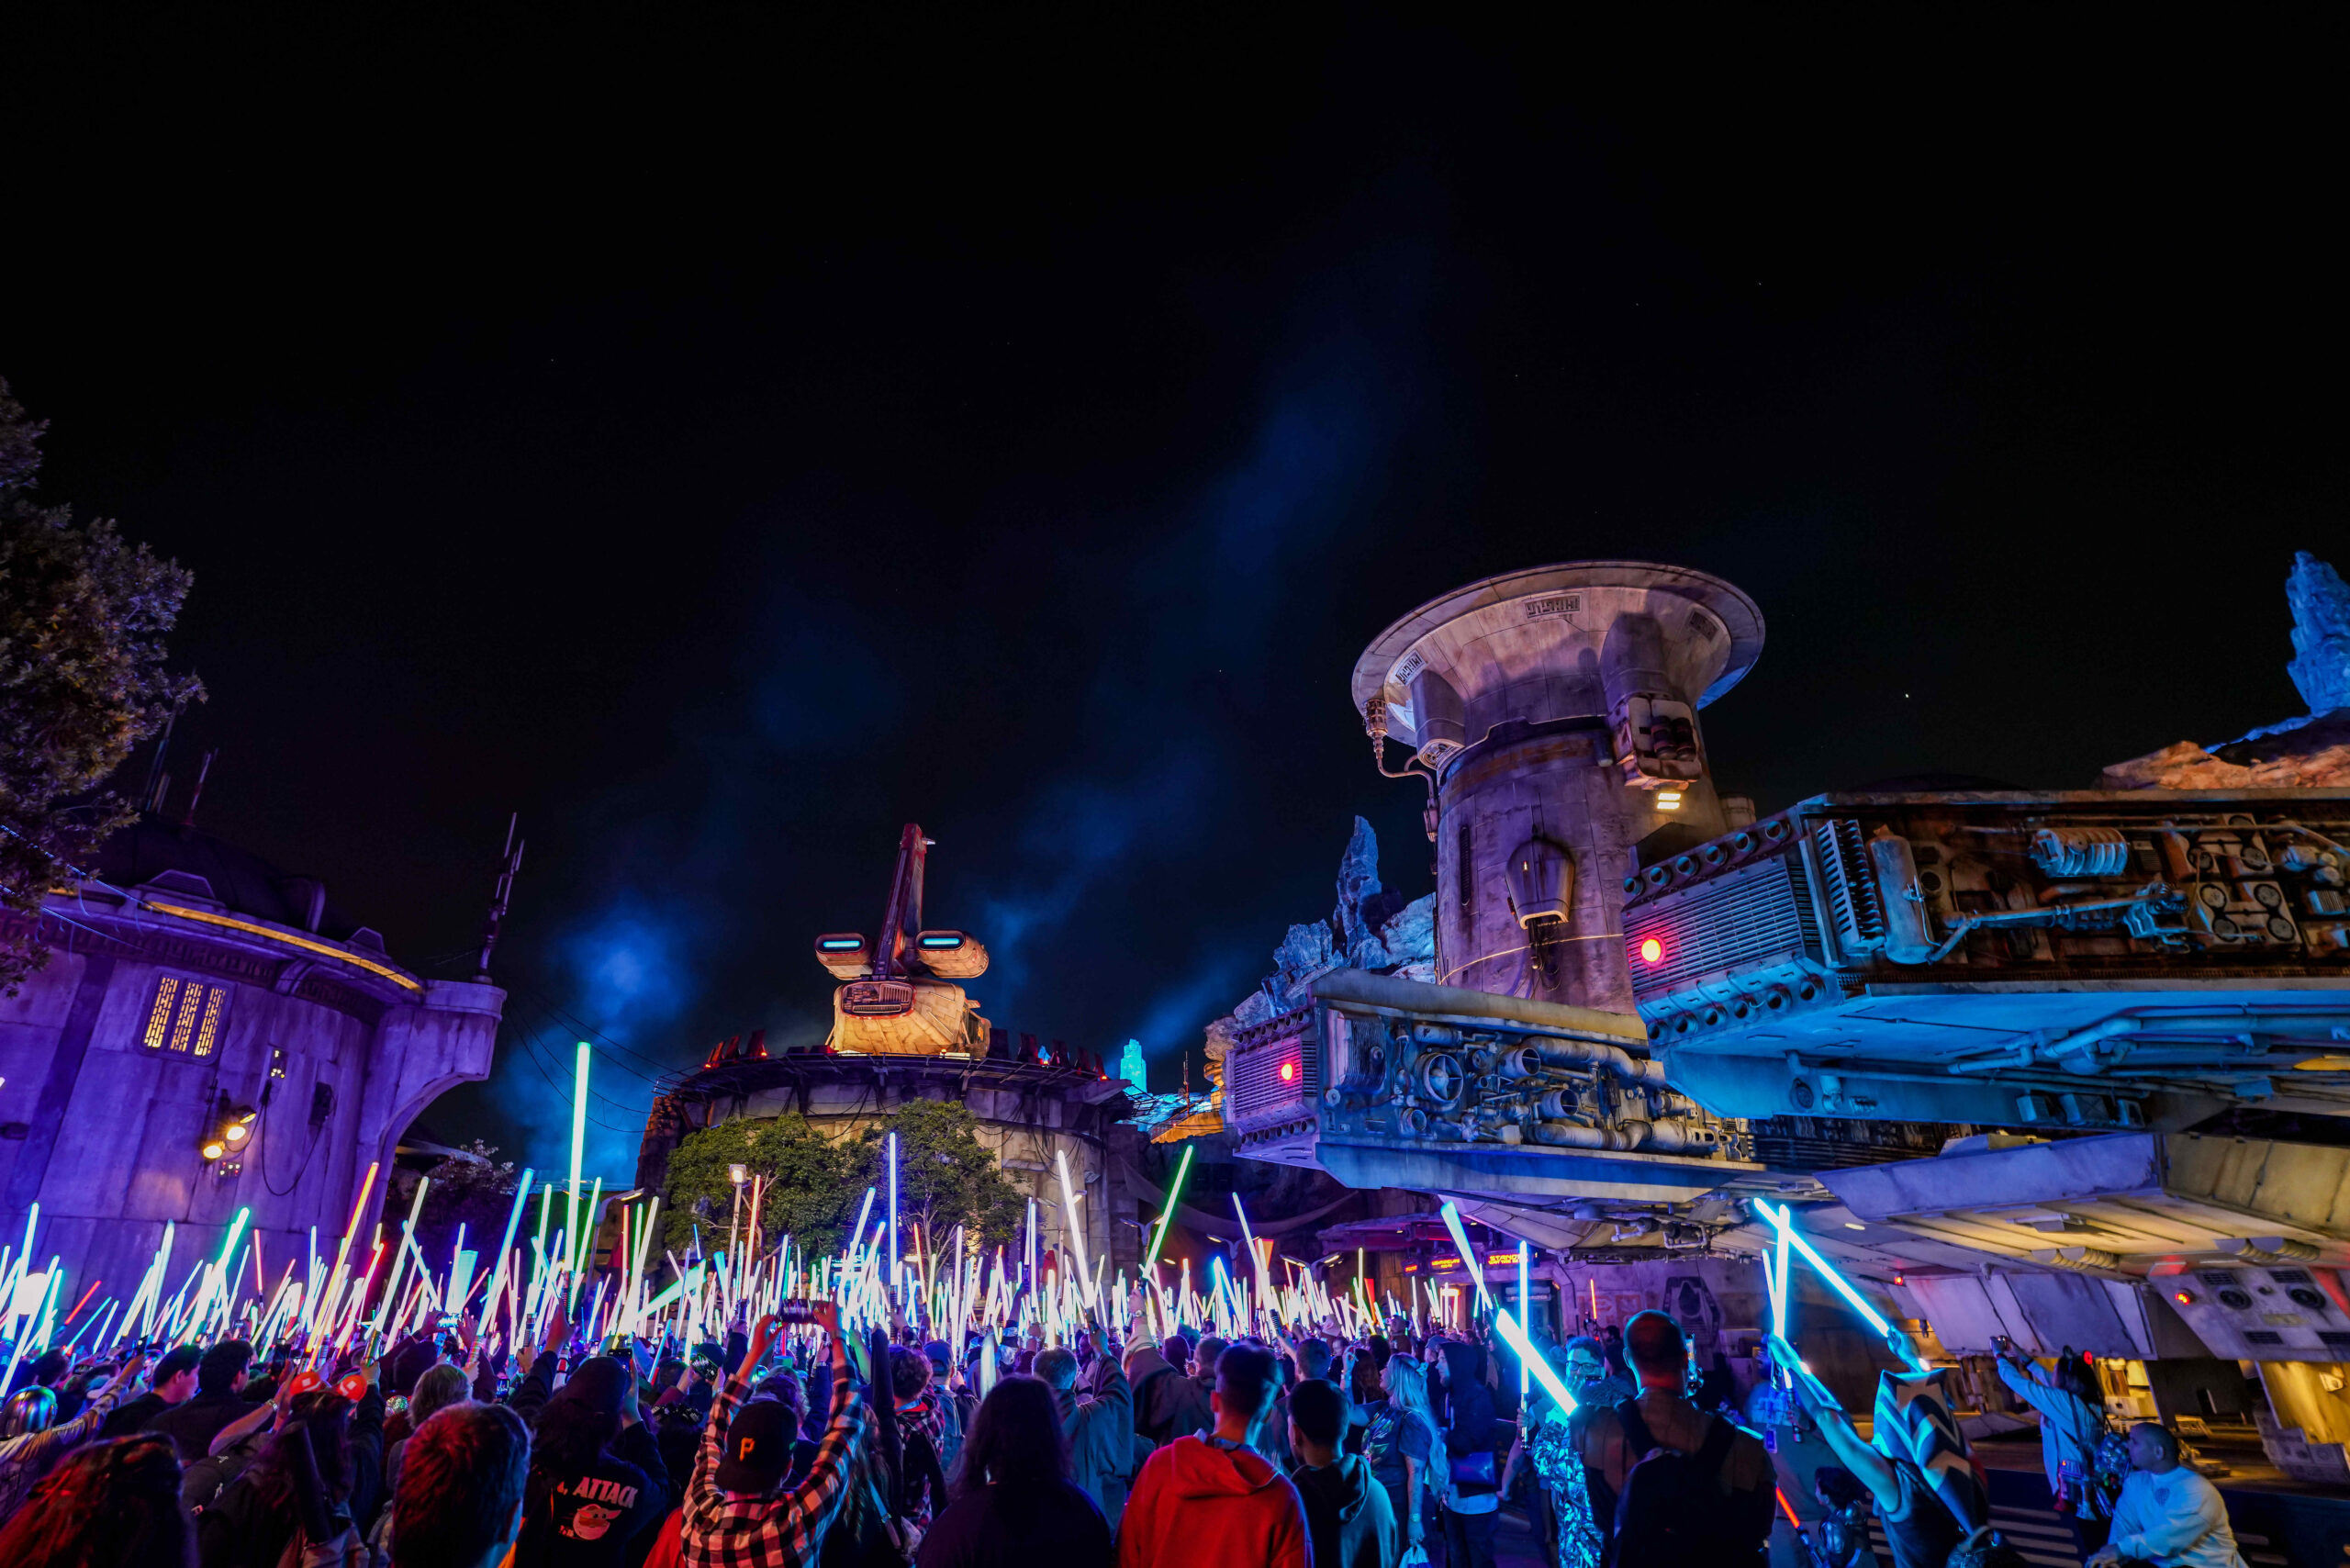 迪士尼樂園”星際大戰之夜 “2 月 23 日星期五門票將公開發售